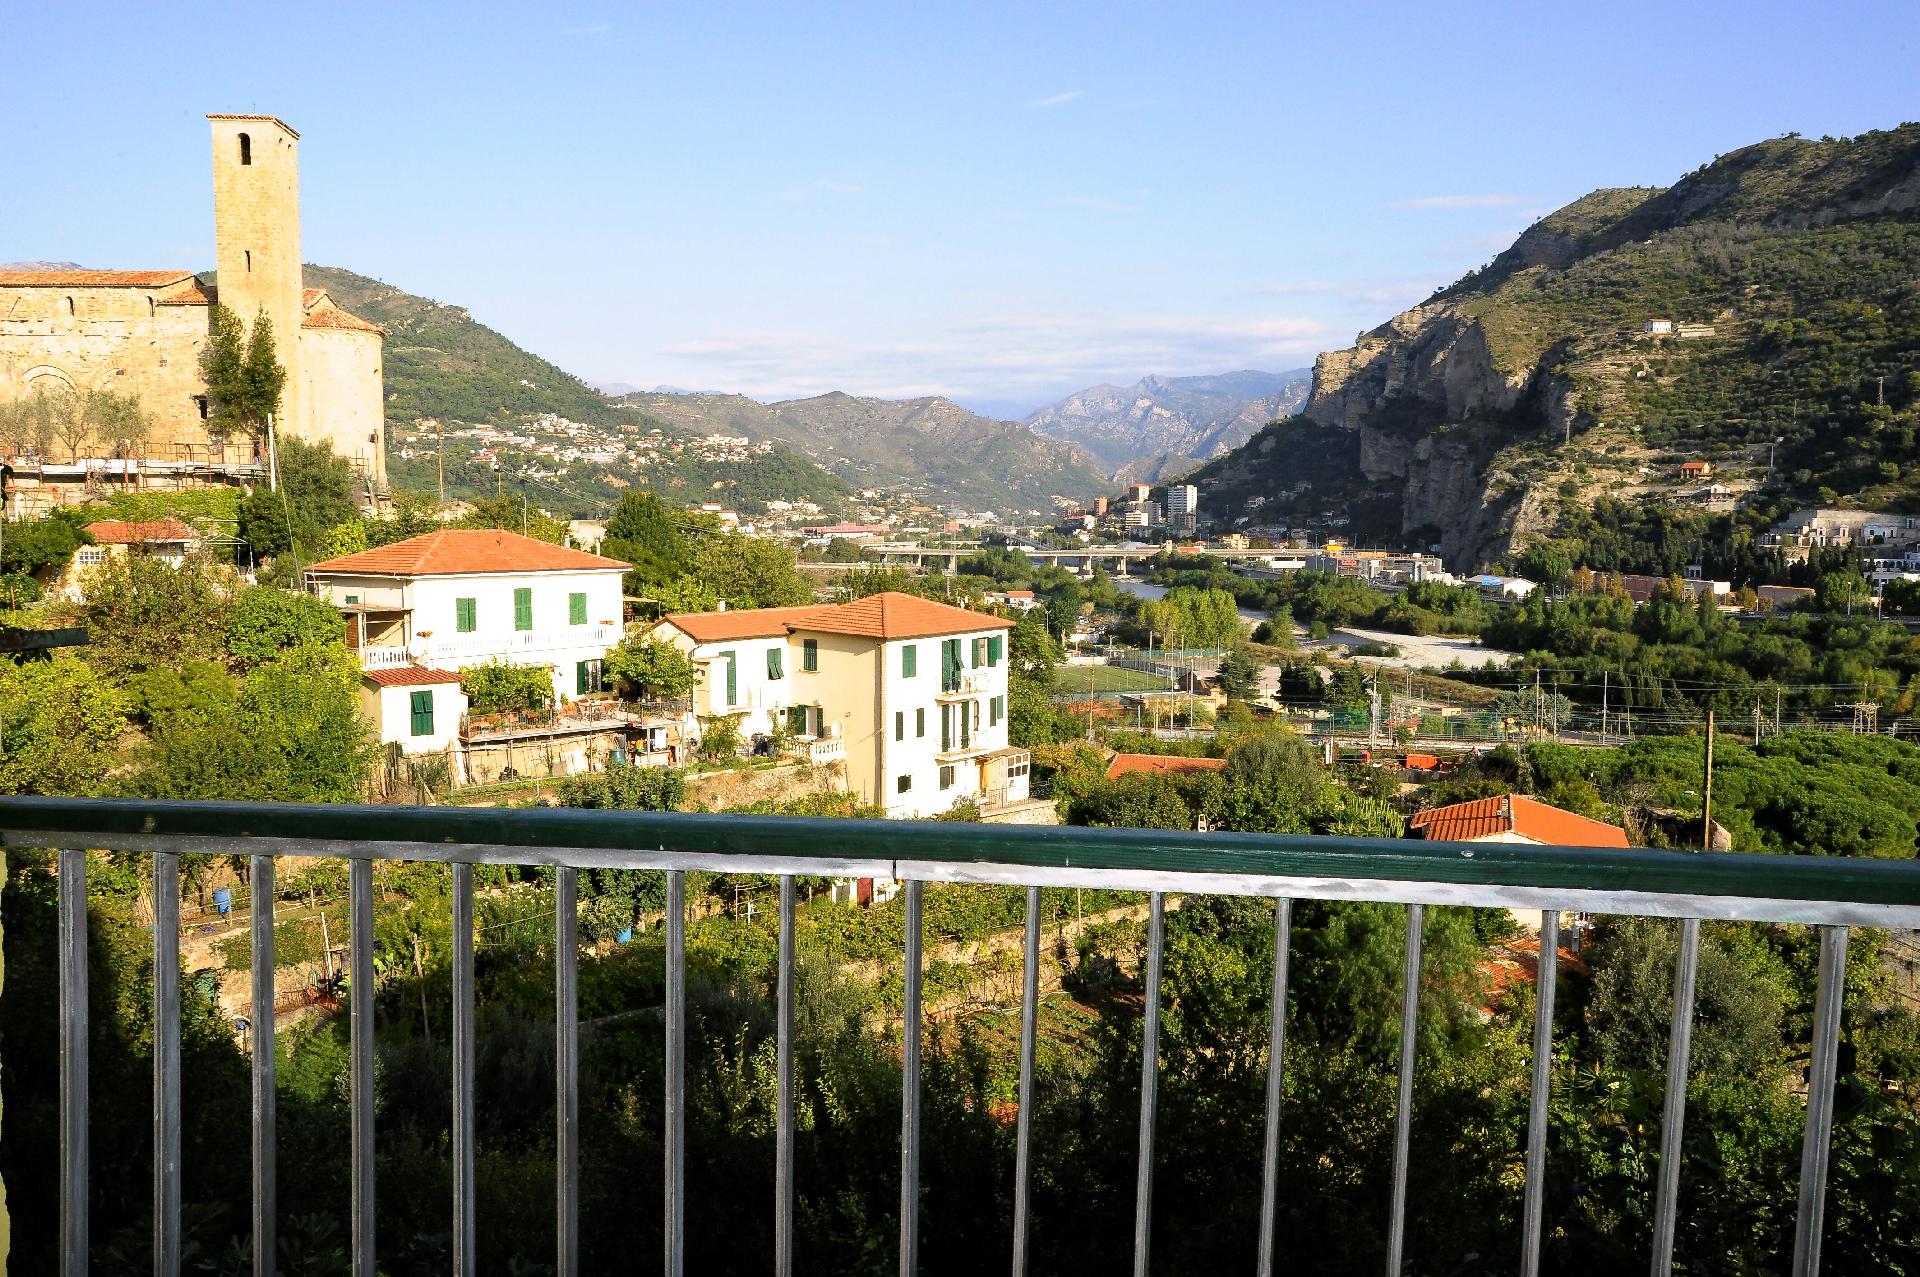 Ferienwohnung für 7 Personen ca. 100 m²  Ferienwohnung in Italien